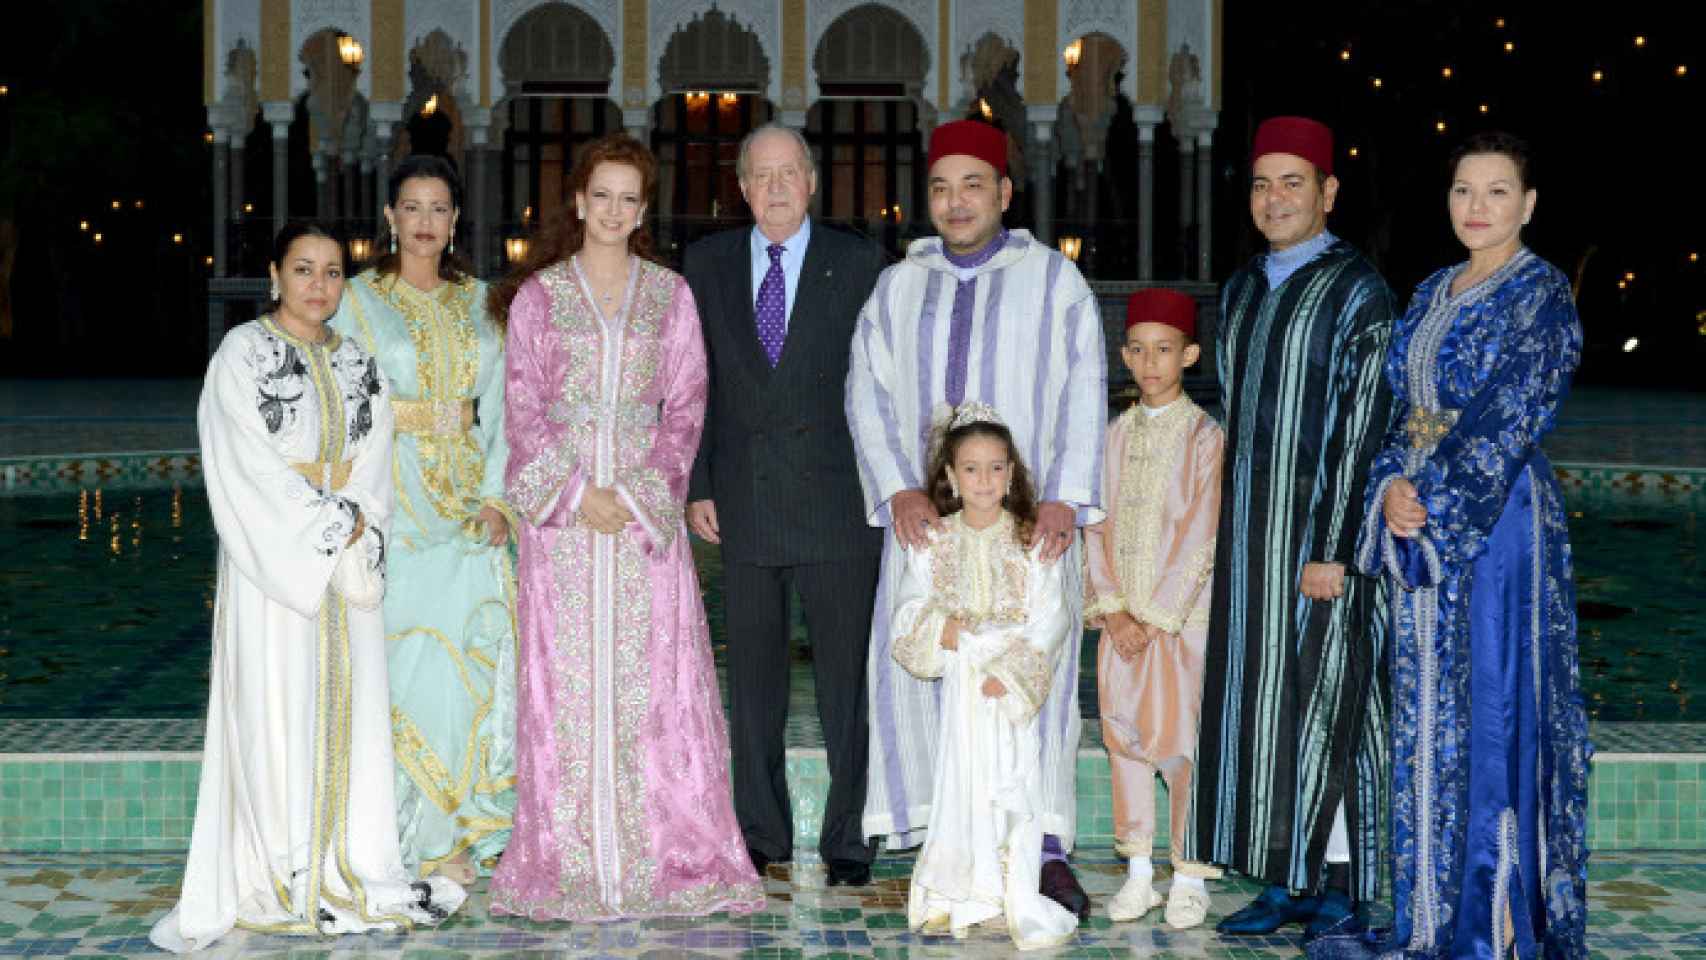 El rey emérito Juan Carlos I posa junto a la familia real de Marruecos